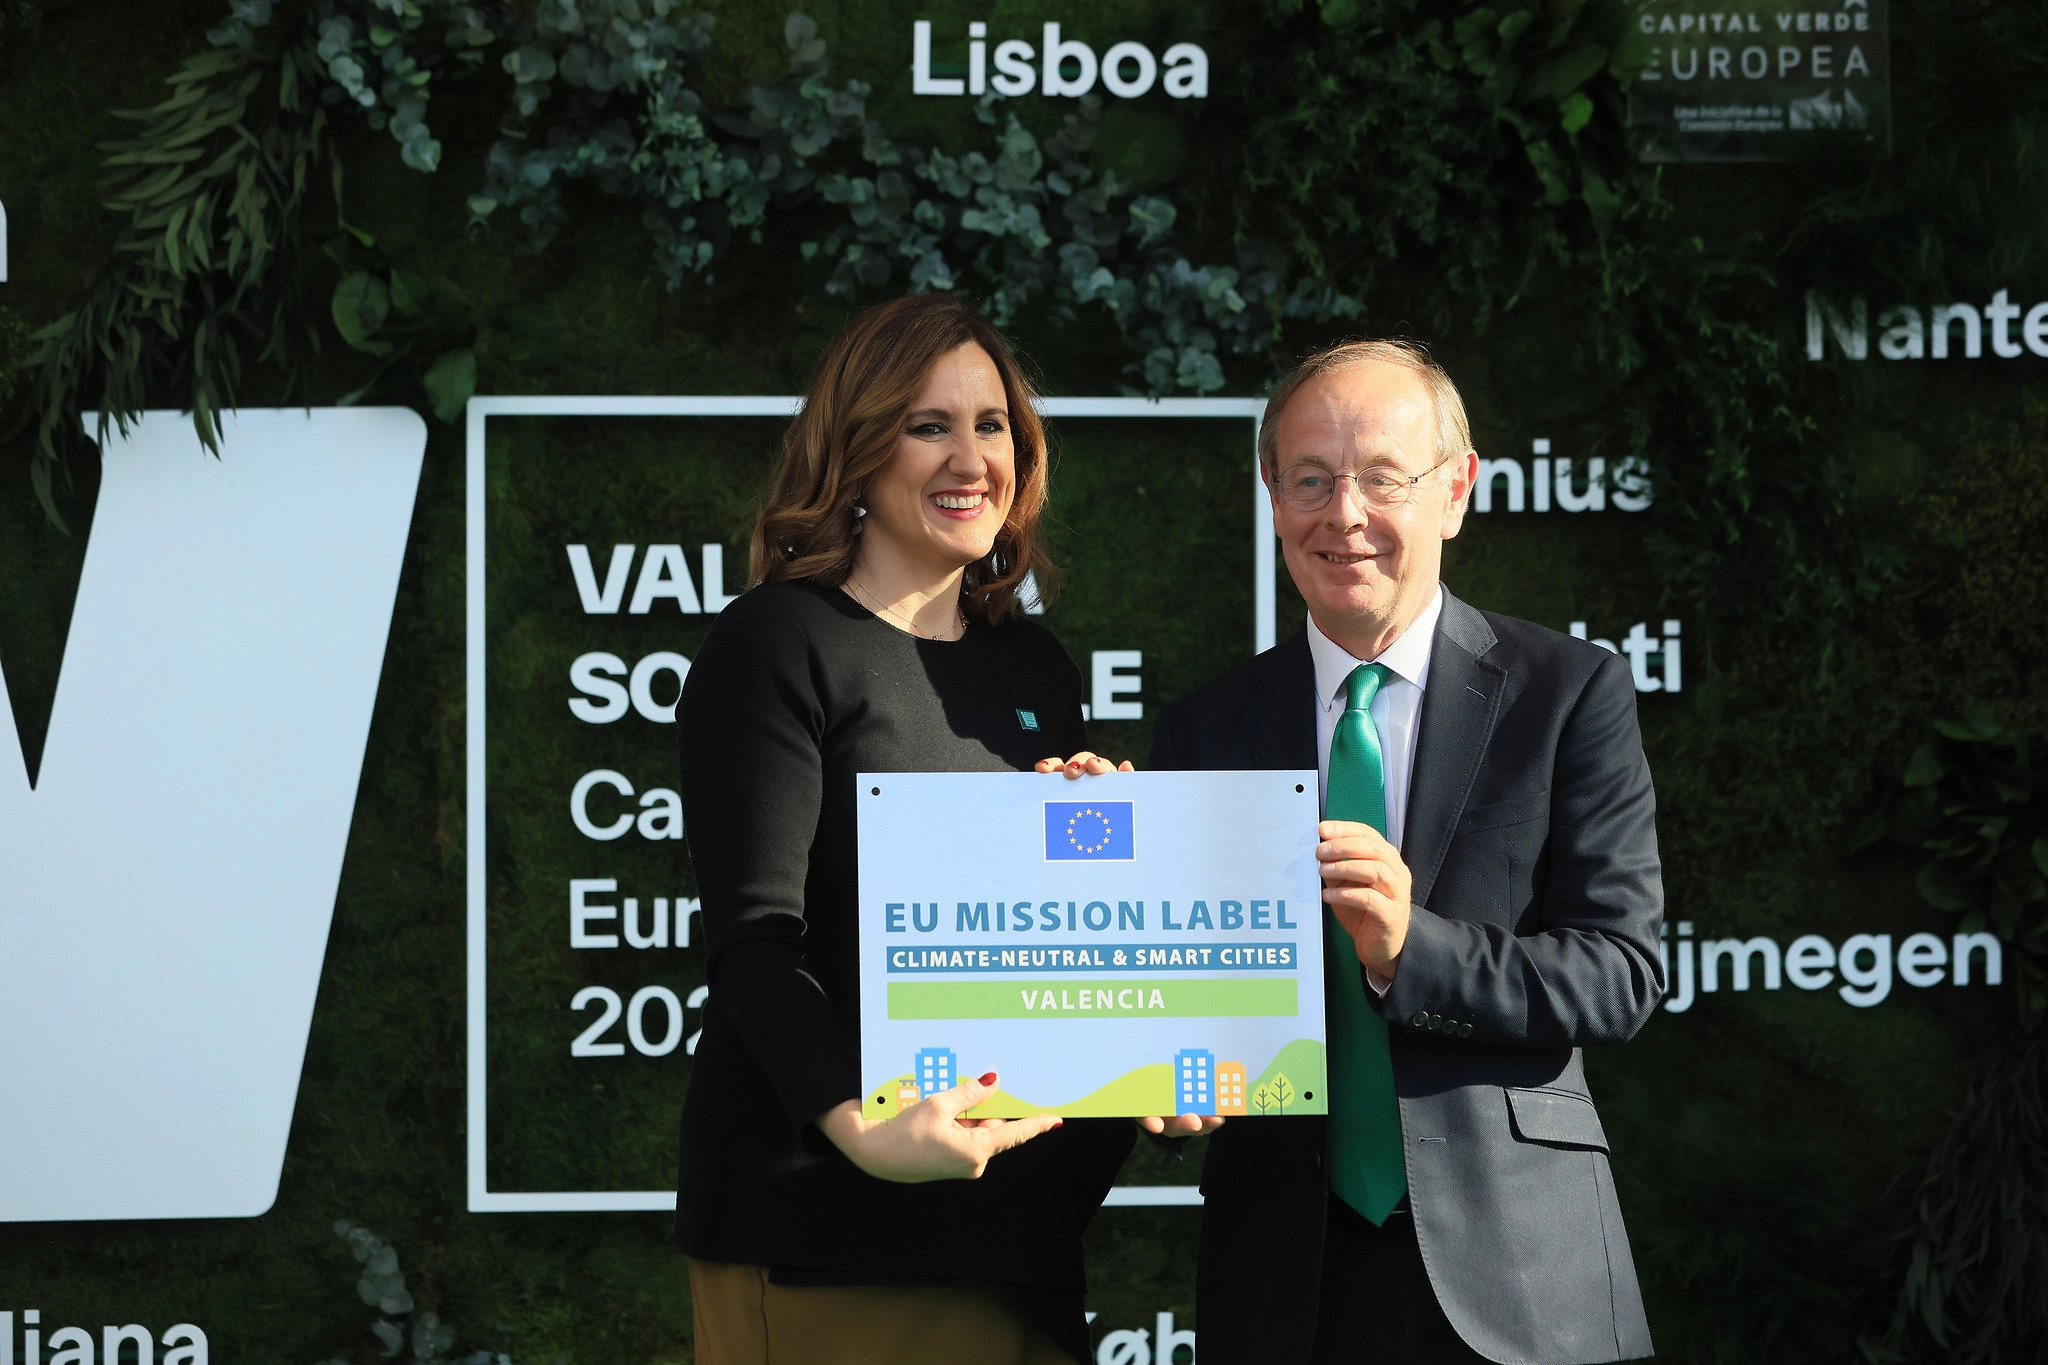 La alcaldesa tep el titol de capital verda europea de mans del subsecretari europeu de Medi Ambient